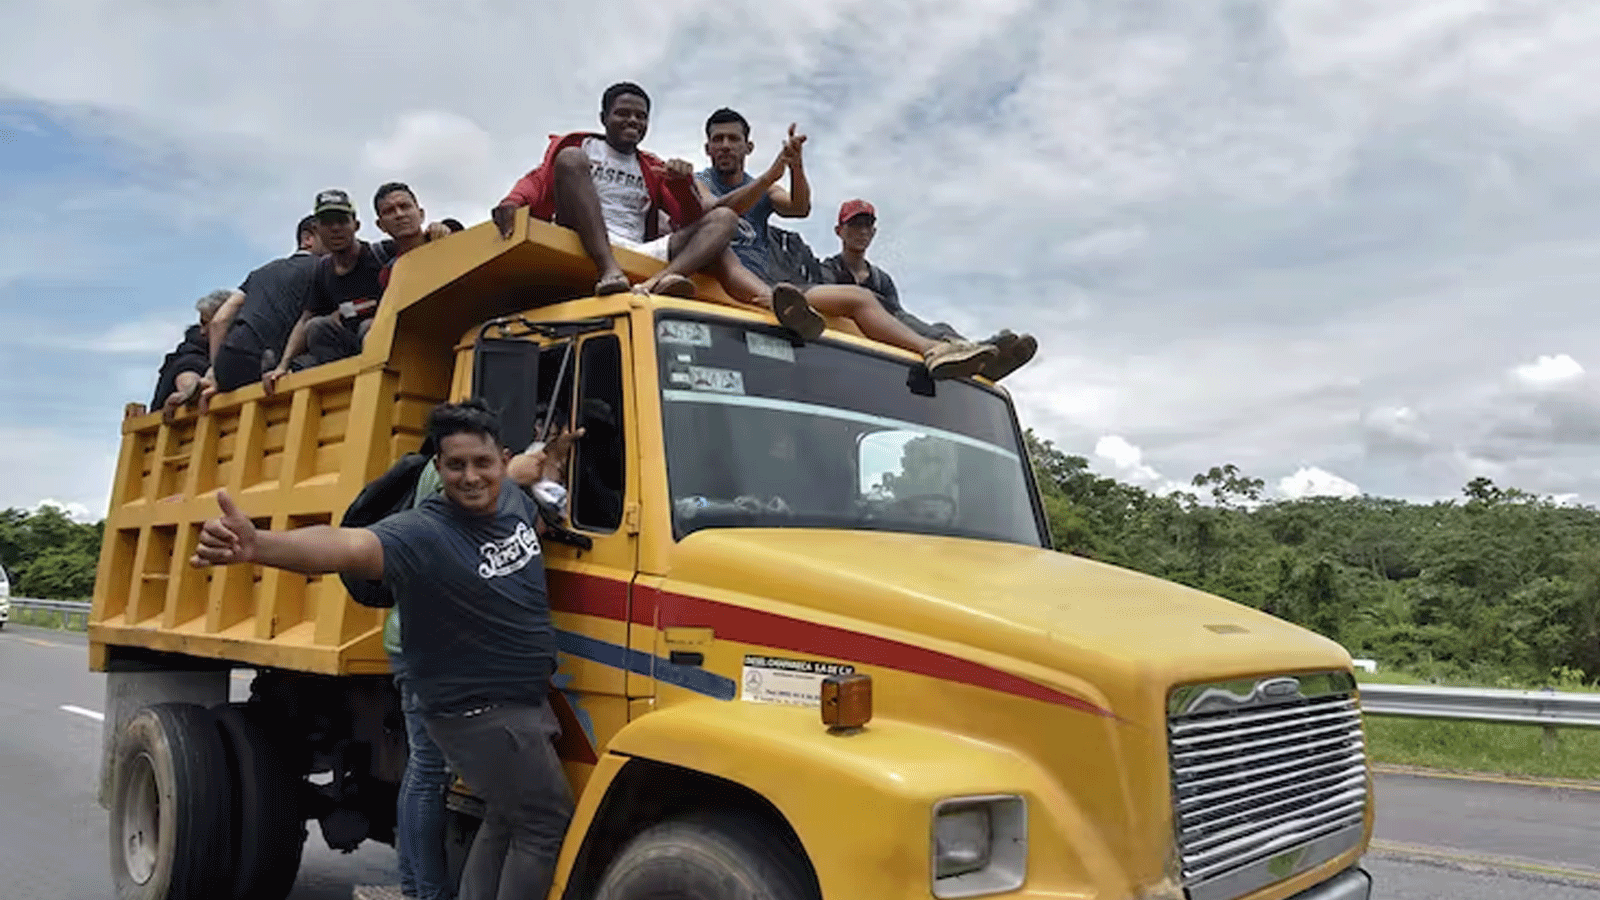  مهاجرون من أميركا اللاتينية يعبرون المكسيك في قافلة متوجهة إلى الولايات المتحدة